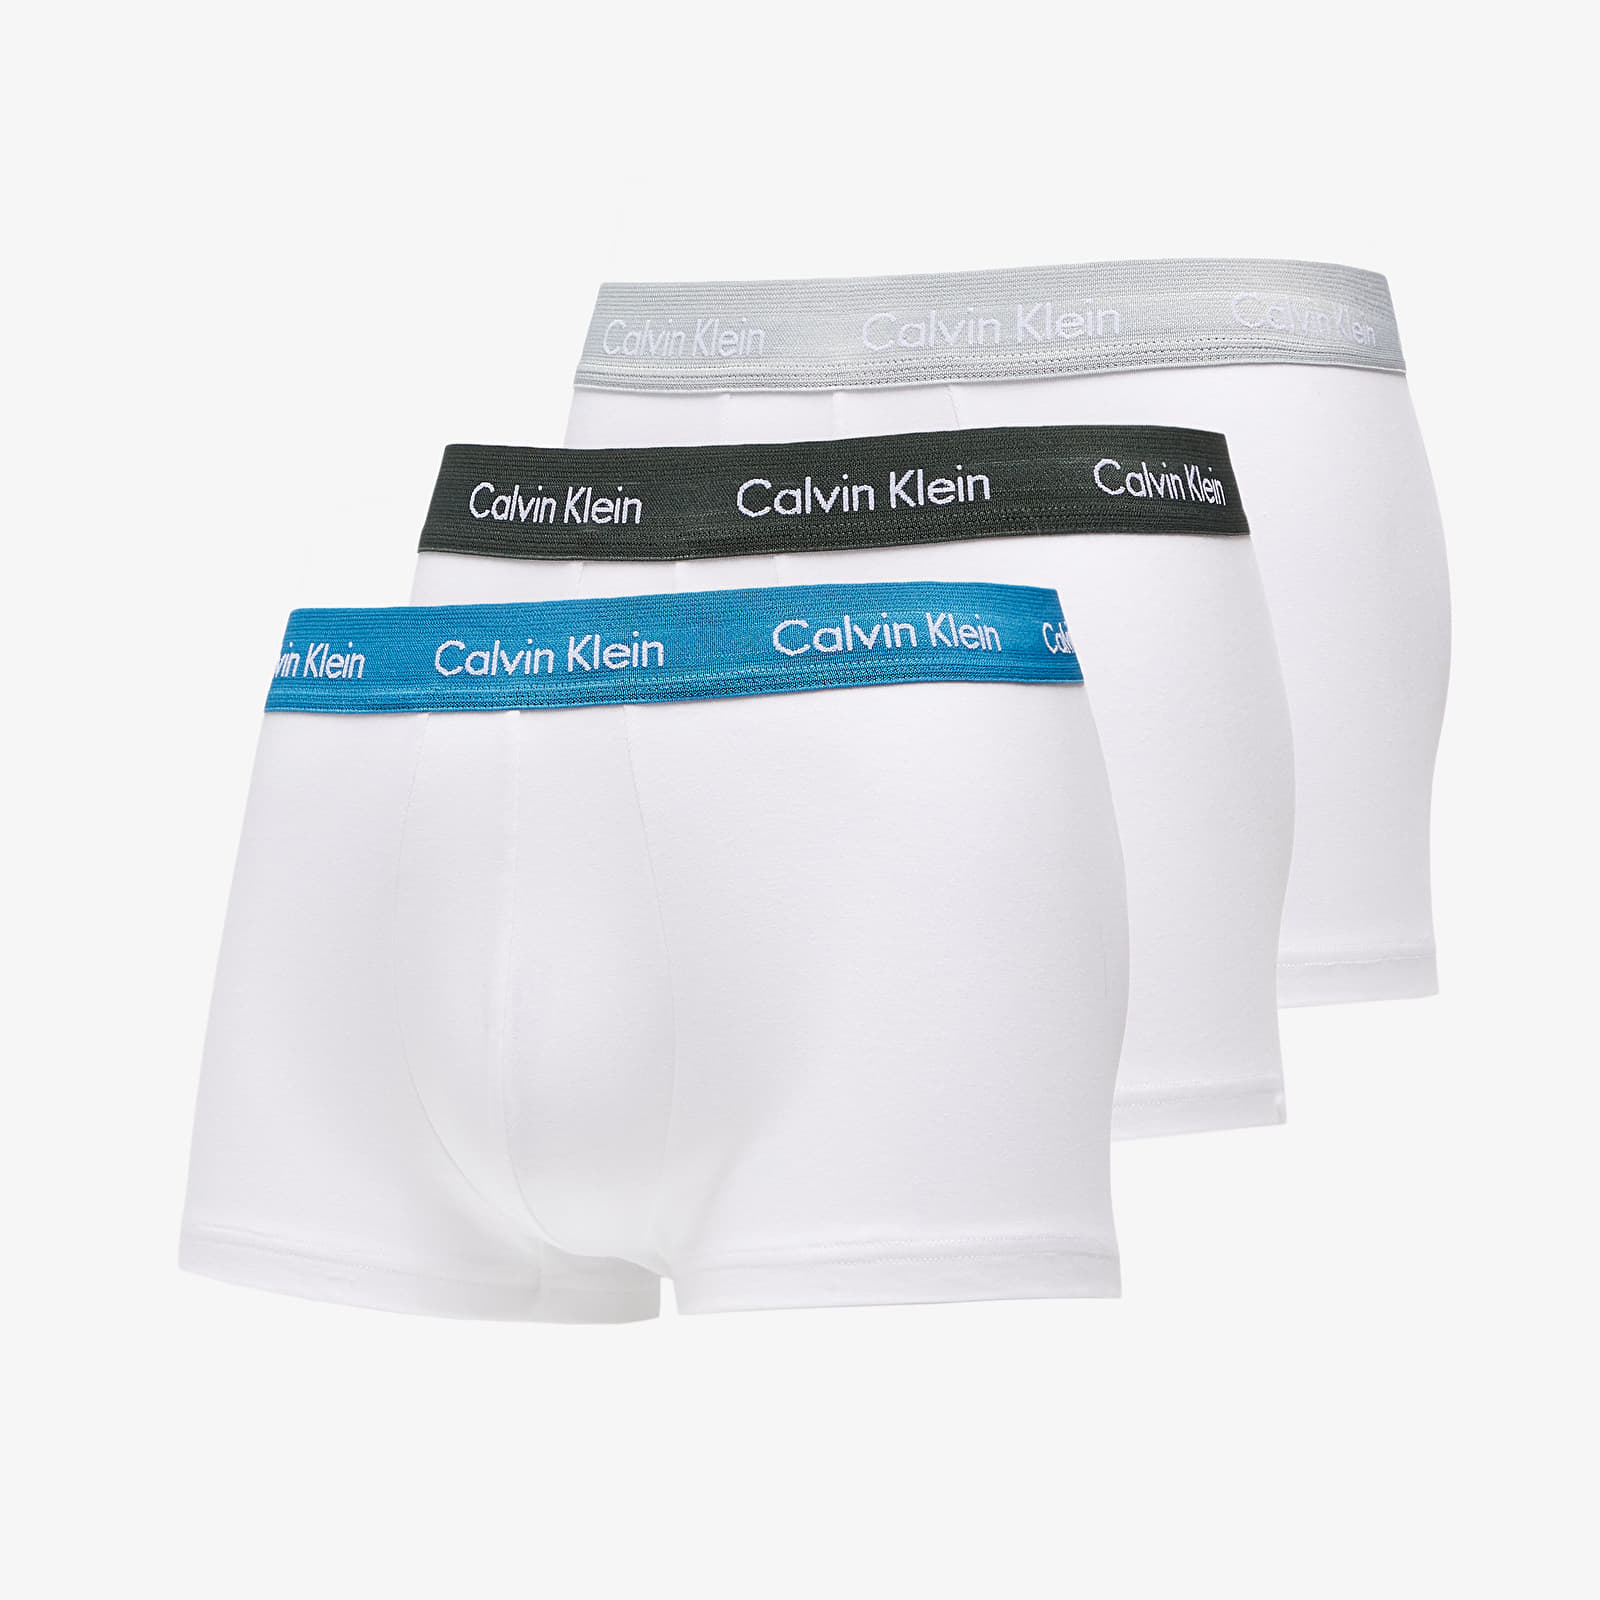 Boxer shorts Calvin Klein Cotton Stretch Low Rise Trunk 3Pk Multicolor